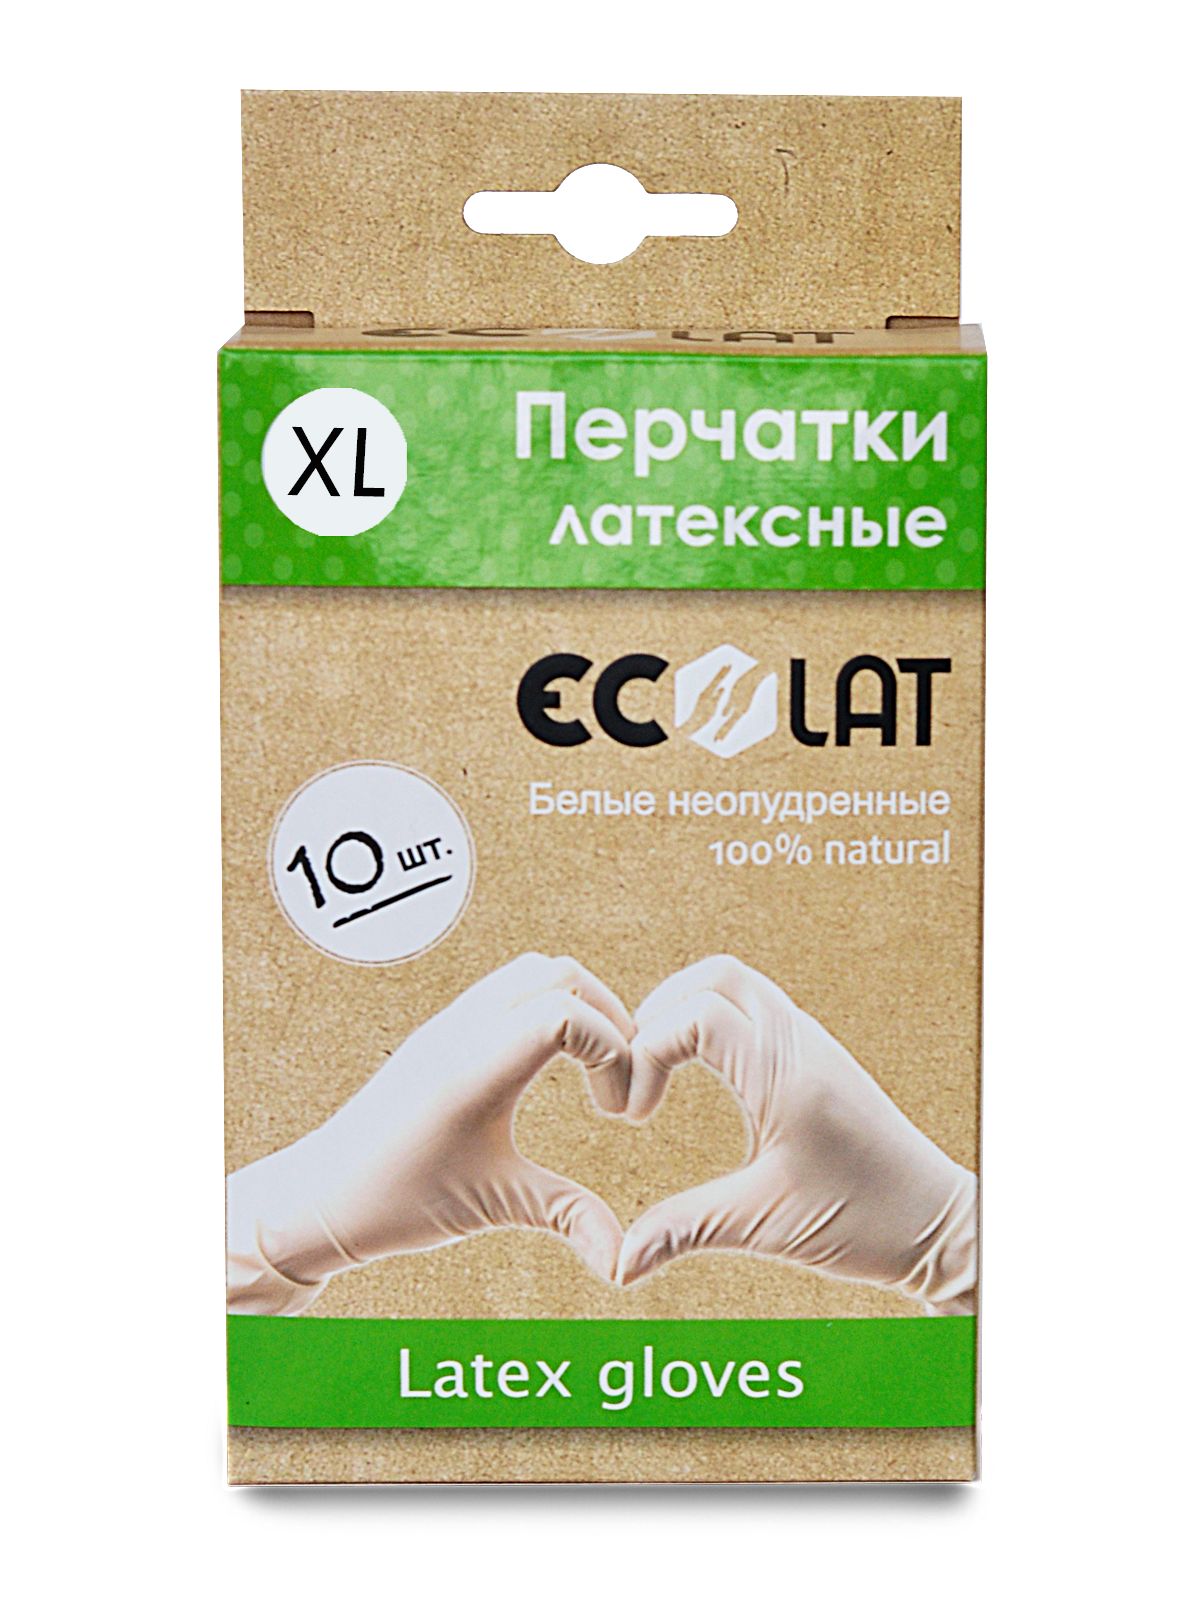 Купить Latex gloves, Перчатки медицинские белые EcoLat, размер XL, 10 шт